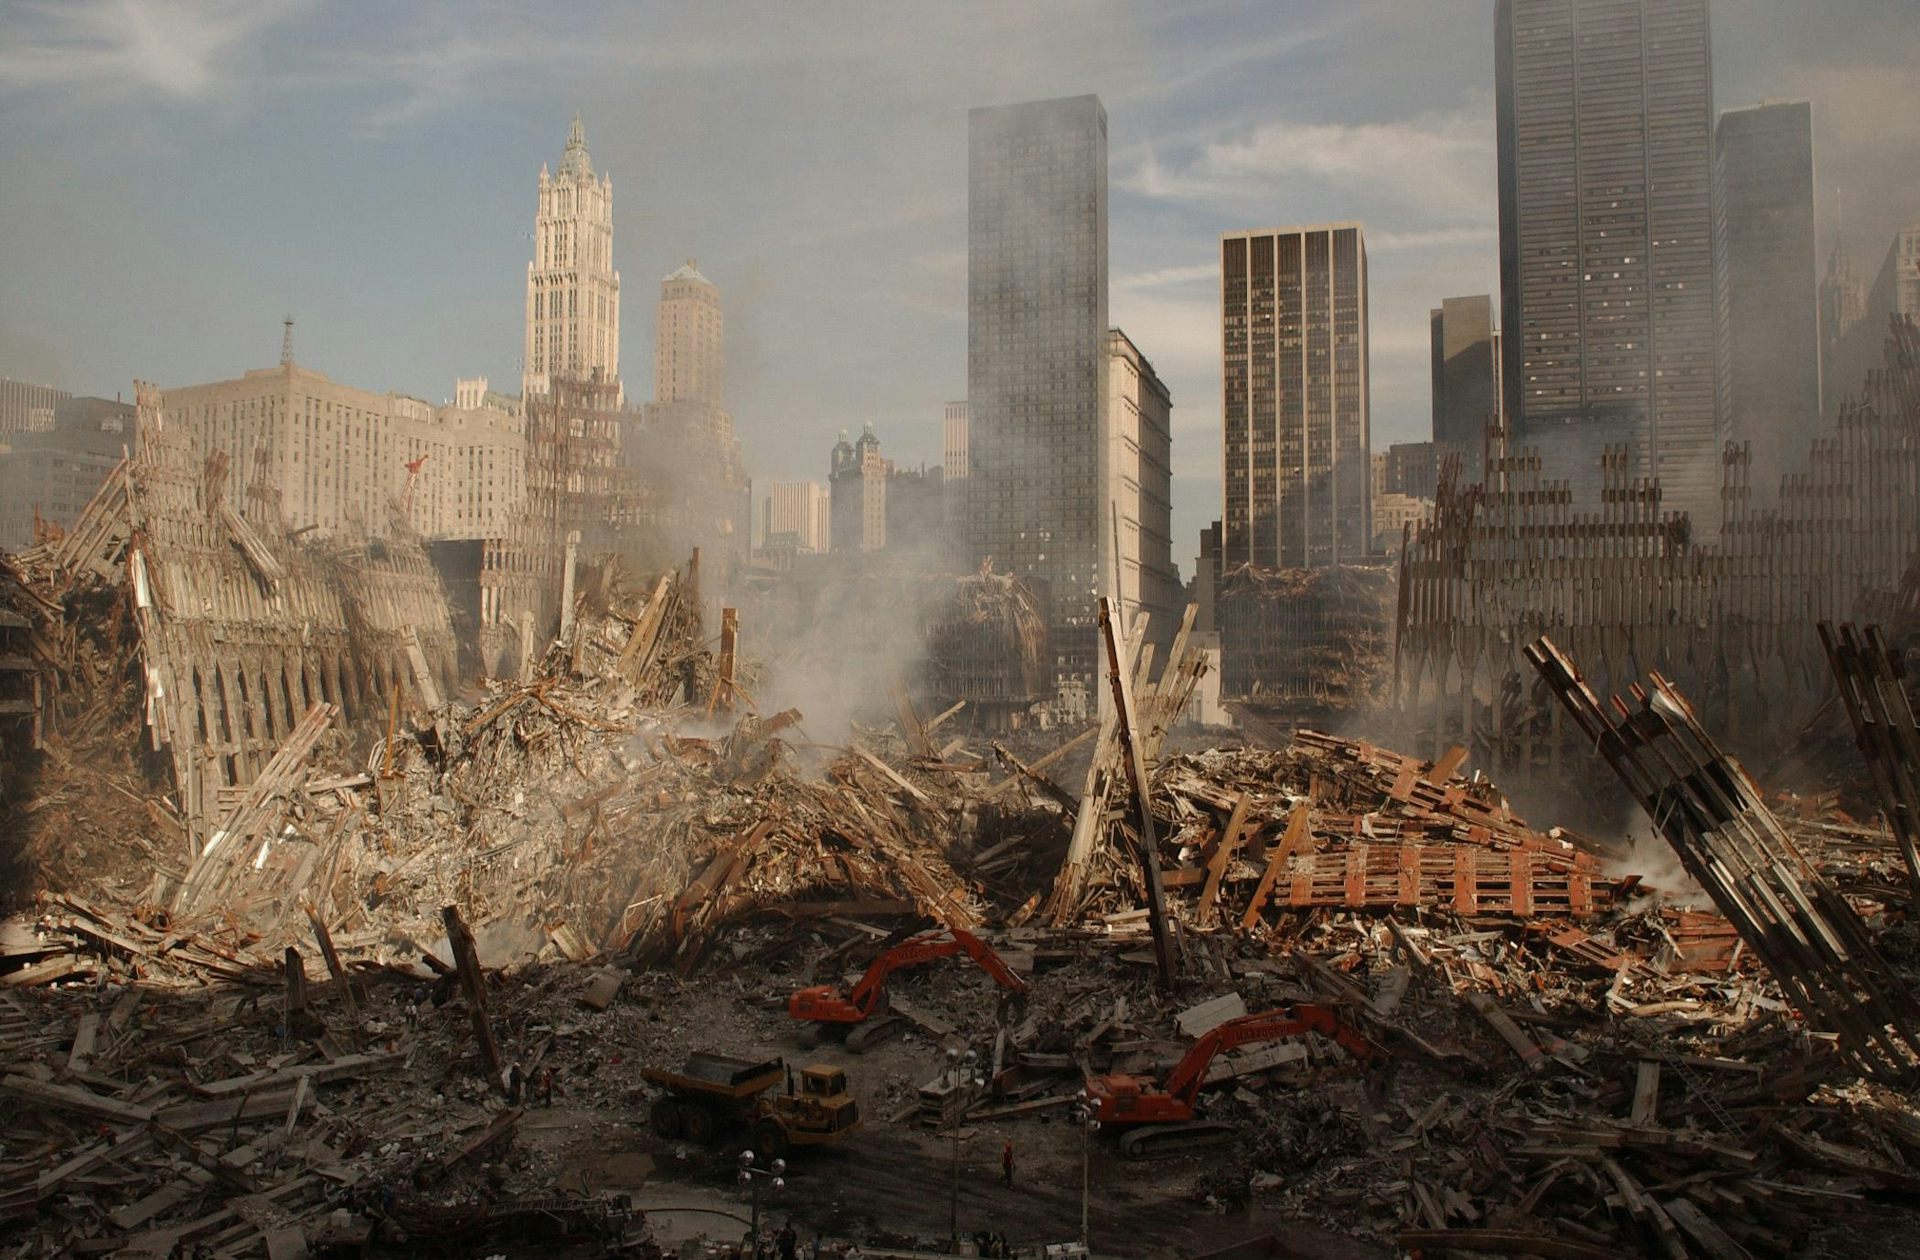  fotografie panoramică a Ground Zero, site-ul World Trade Center, a doua zi după 9/11.